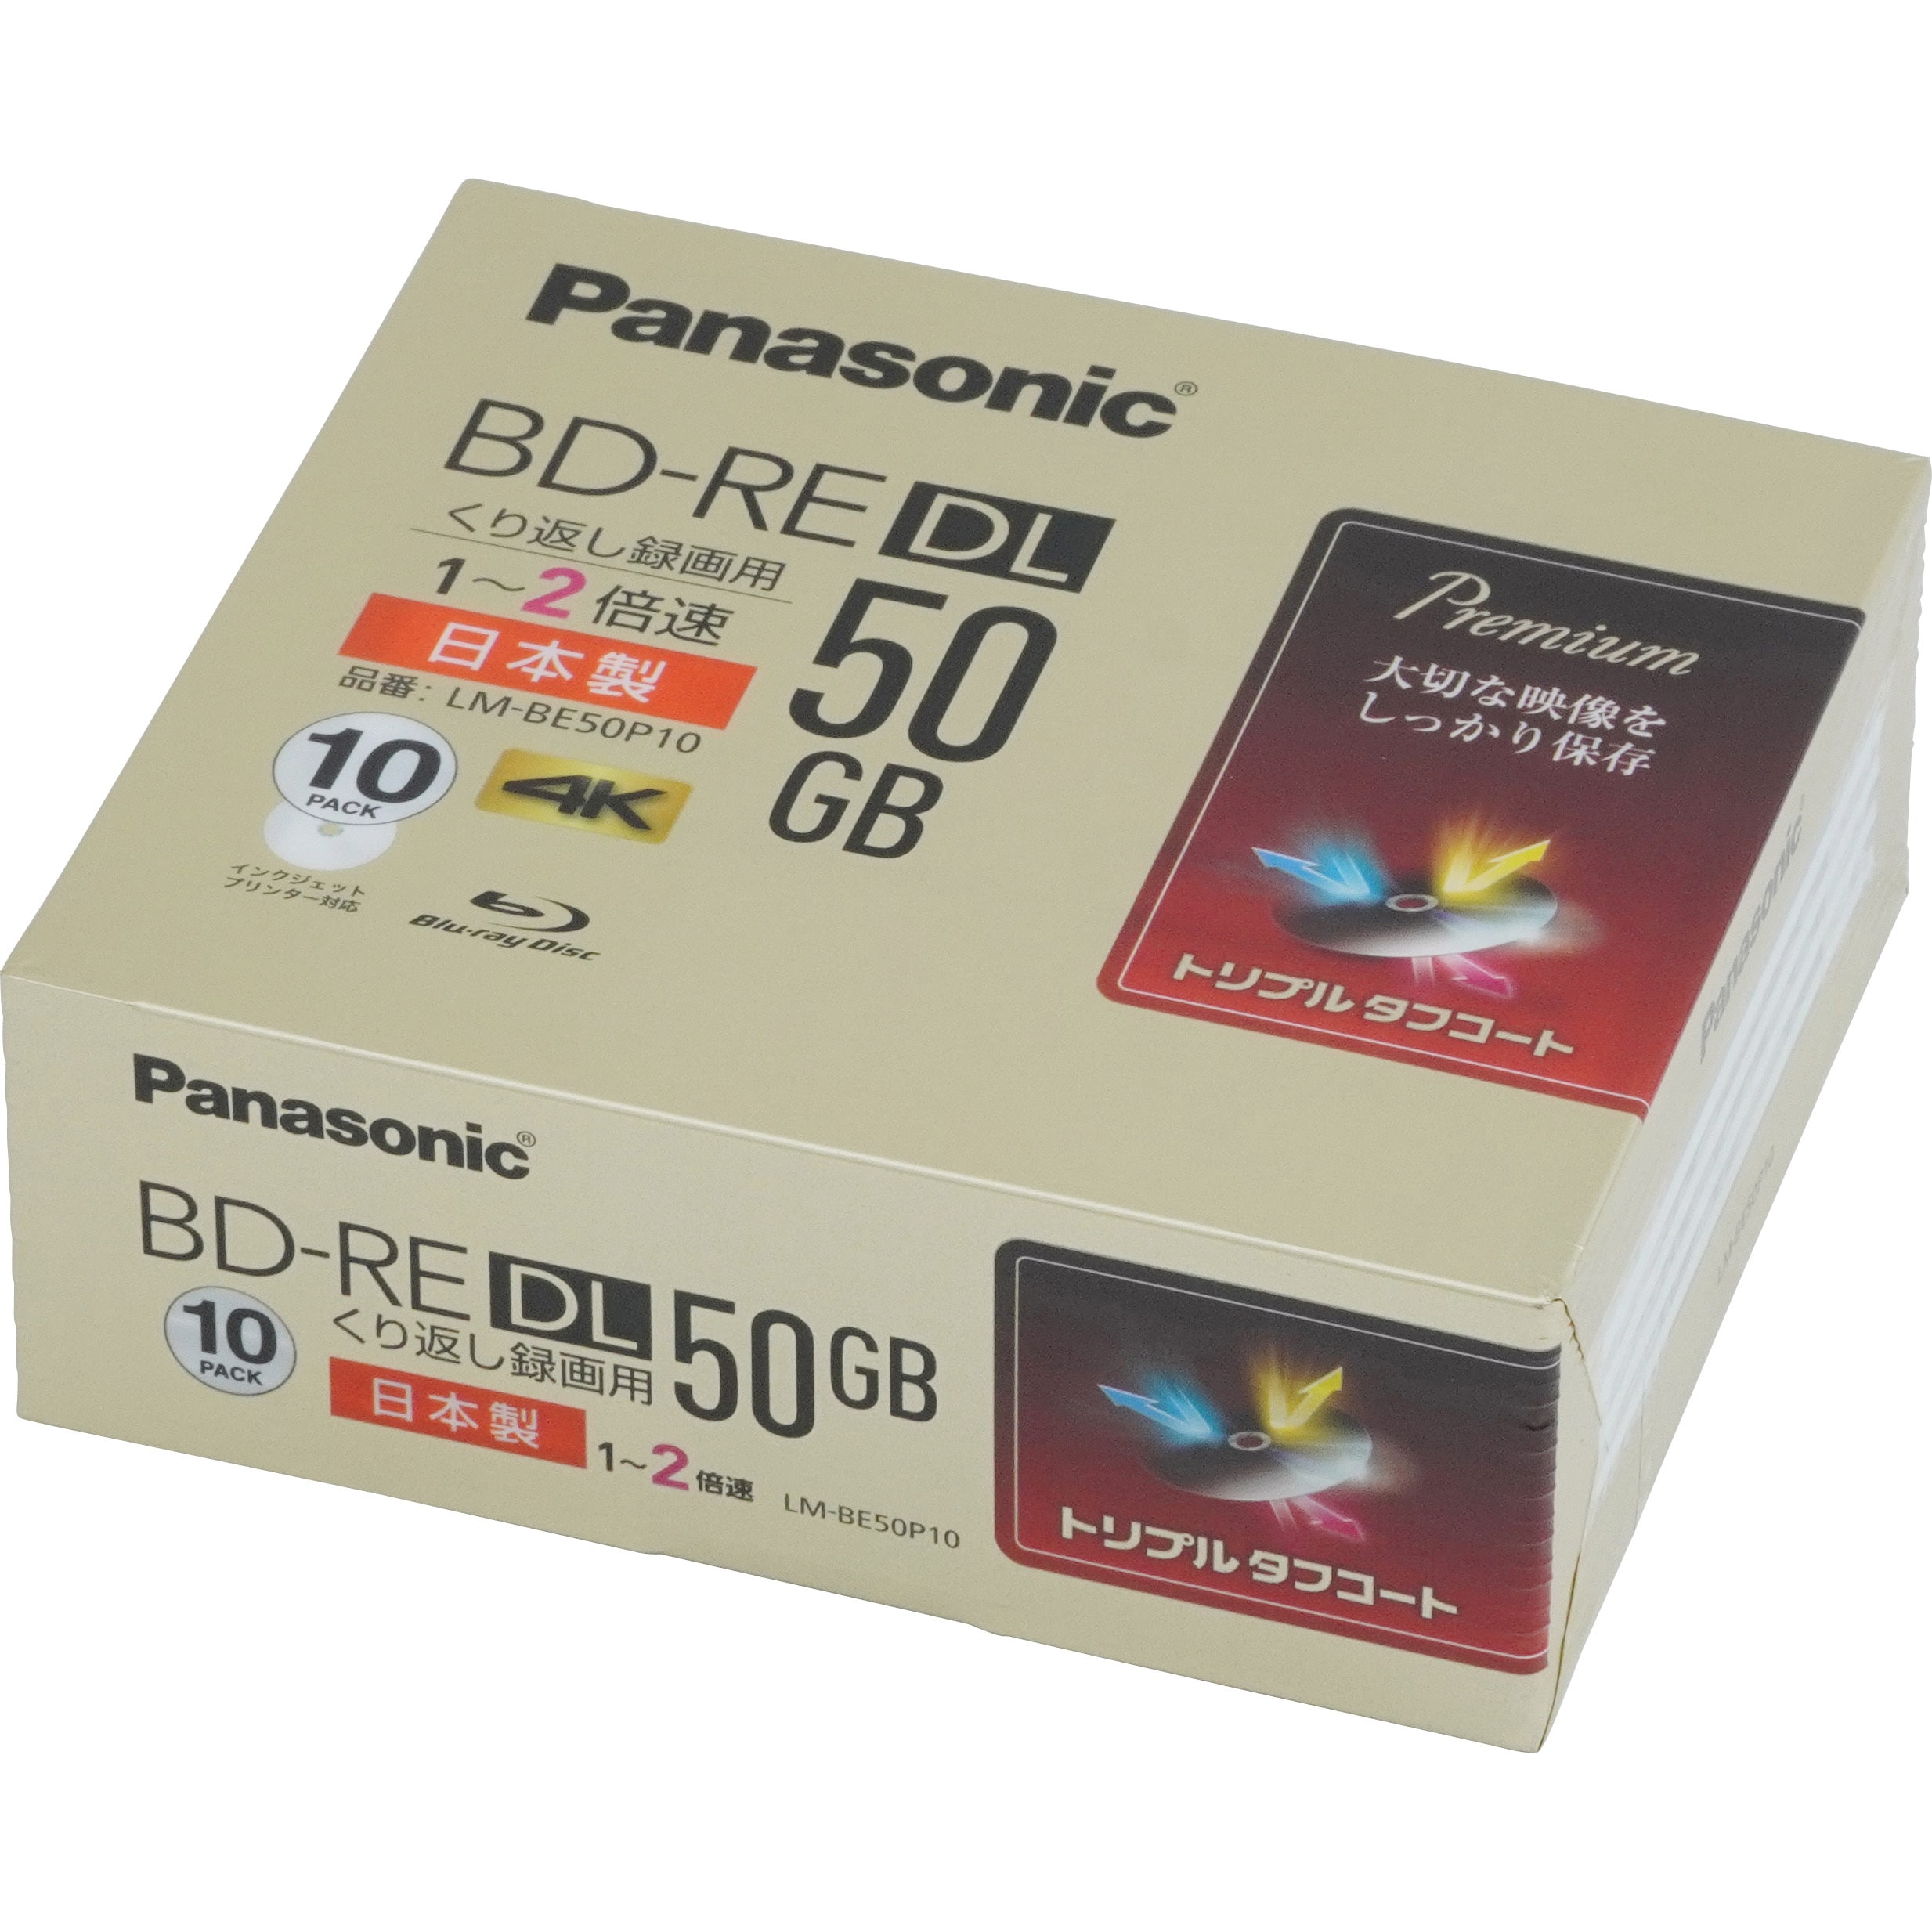  ブルーレイディスク 録画用 50gb パナソニック 4倍速 ブルーレイディスク パナソニック LM-BR50LP5 DVD ビデオ ダビング用dvd panasonic